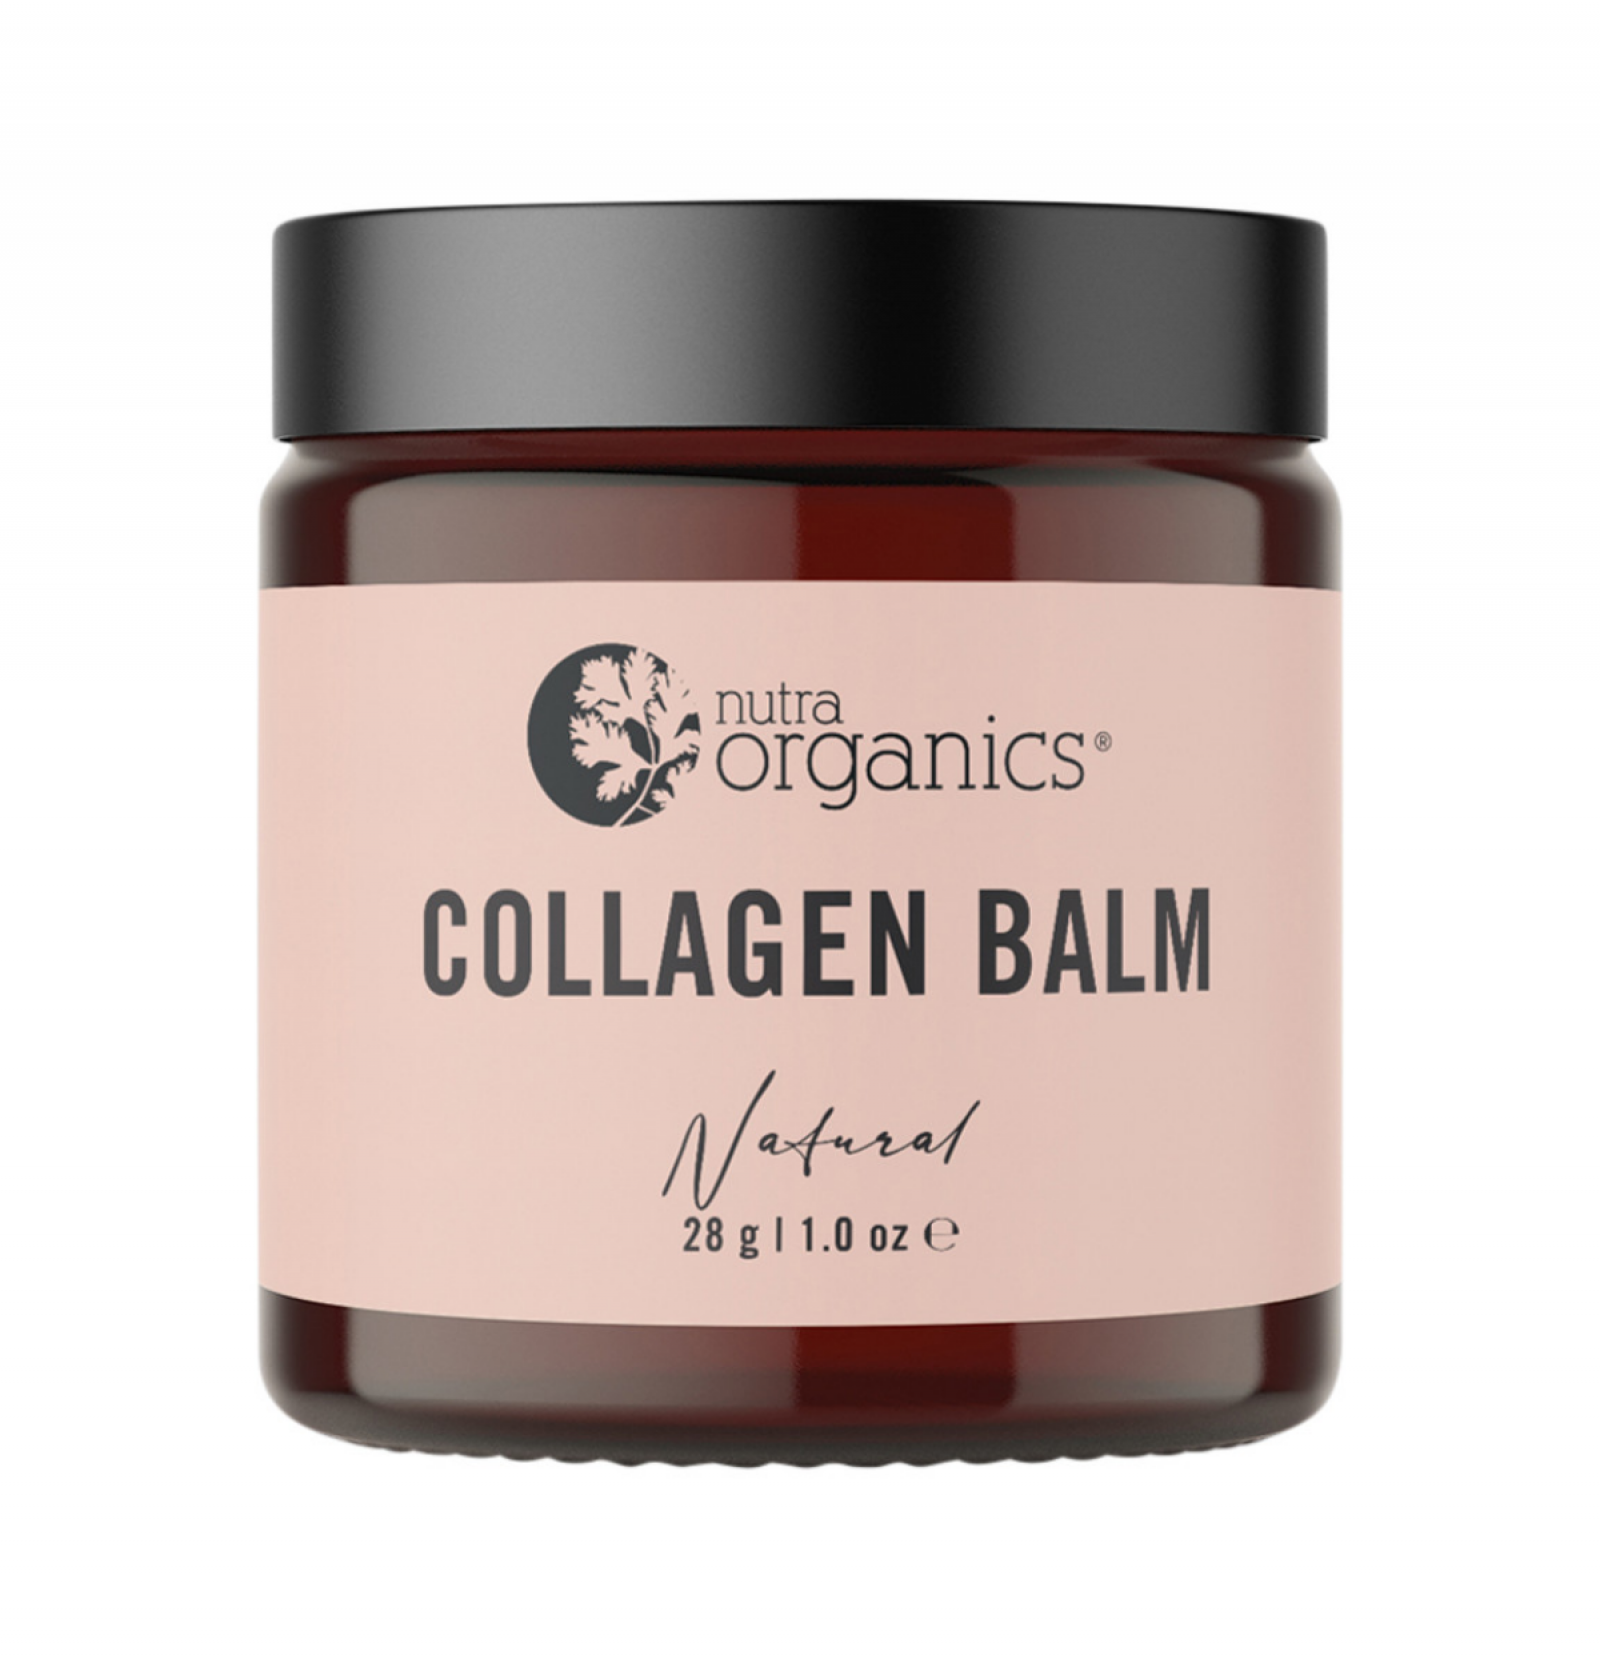 NUTRA ORGANICS Collagen Balm - Natural 28g